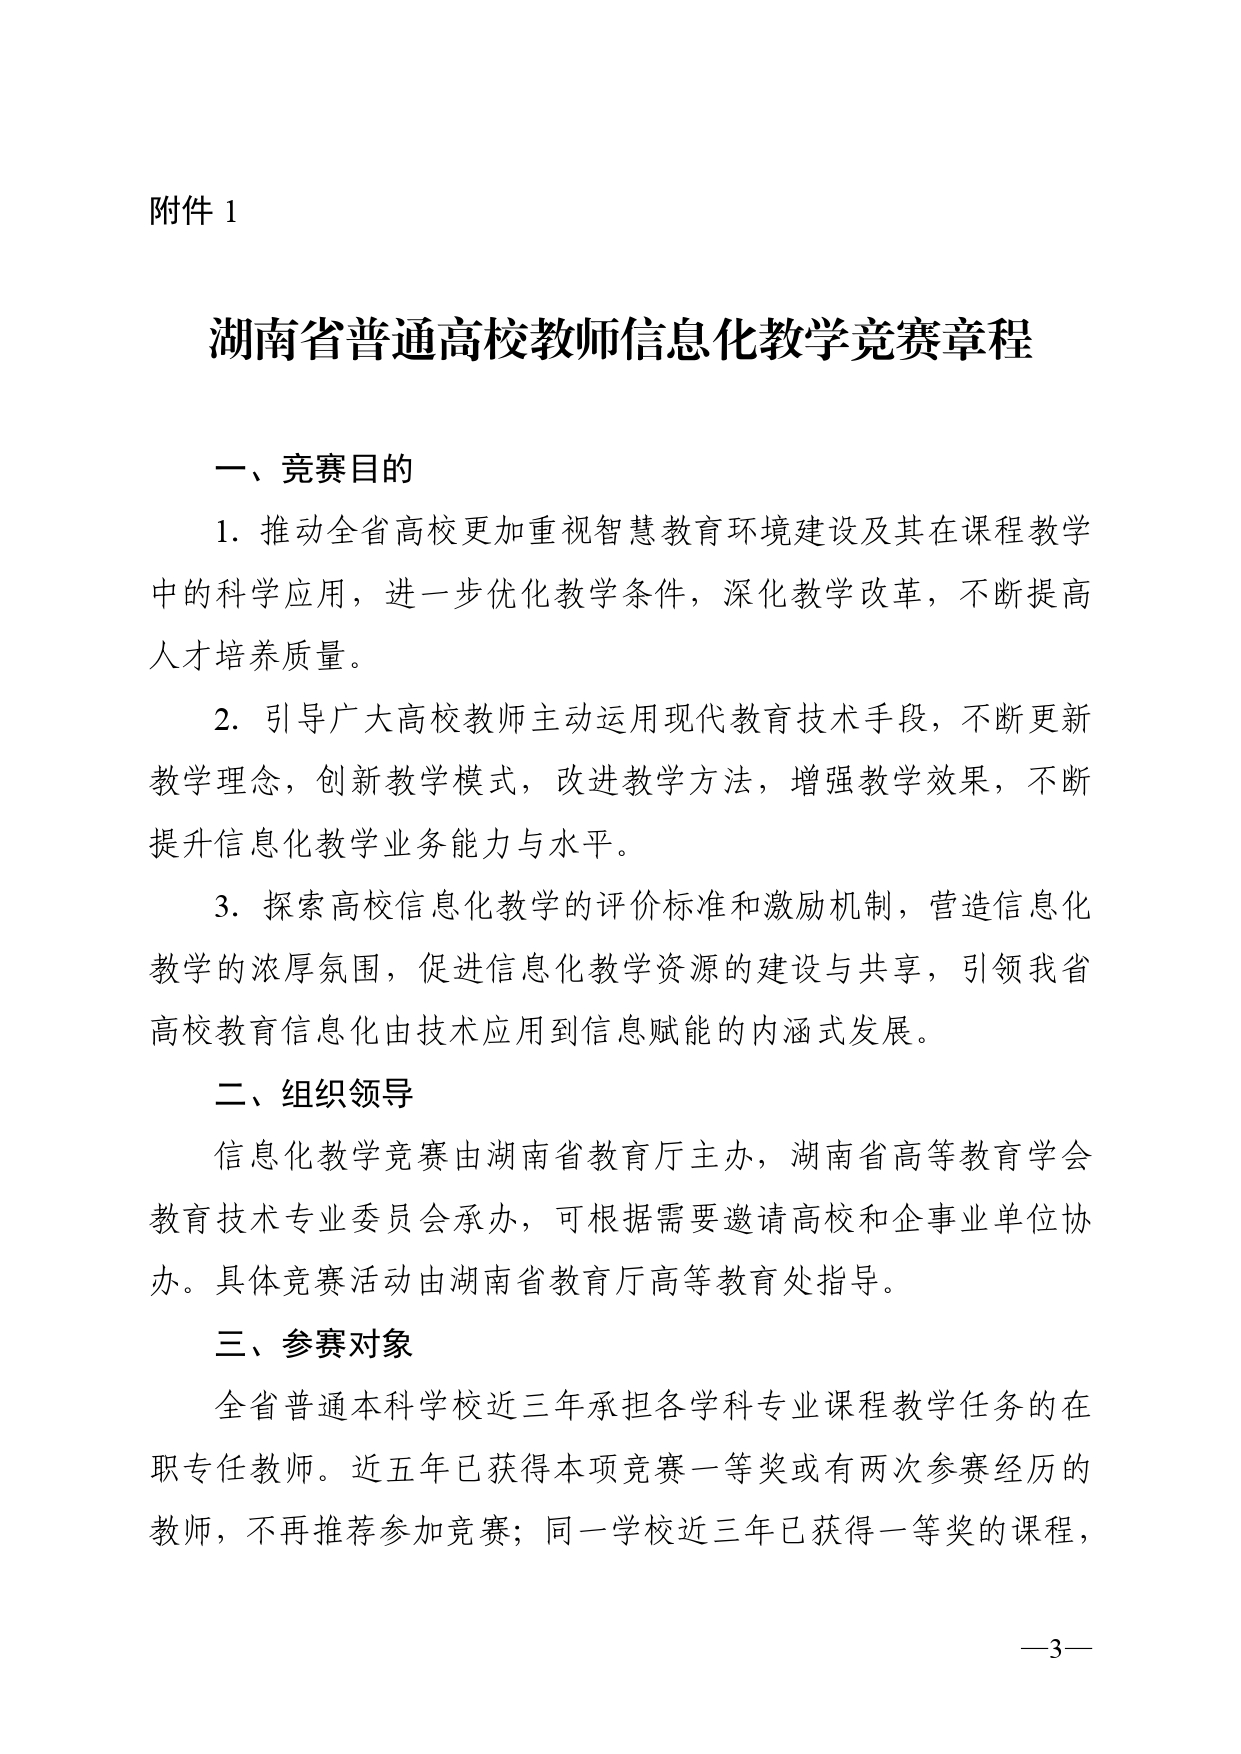 关于开展2023年湖南省普通高校教师信息化教学竞赛的通知正文(1)_page-0003.jpg